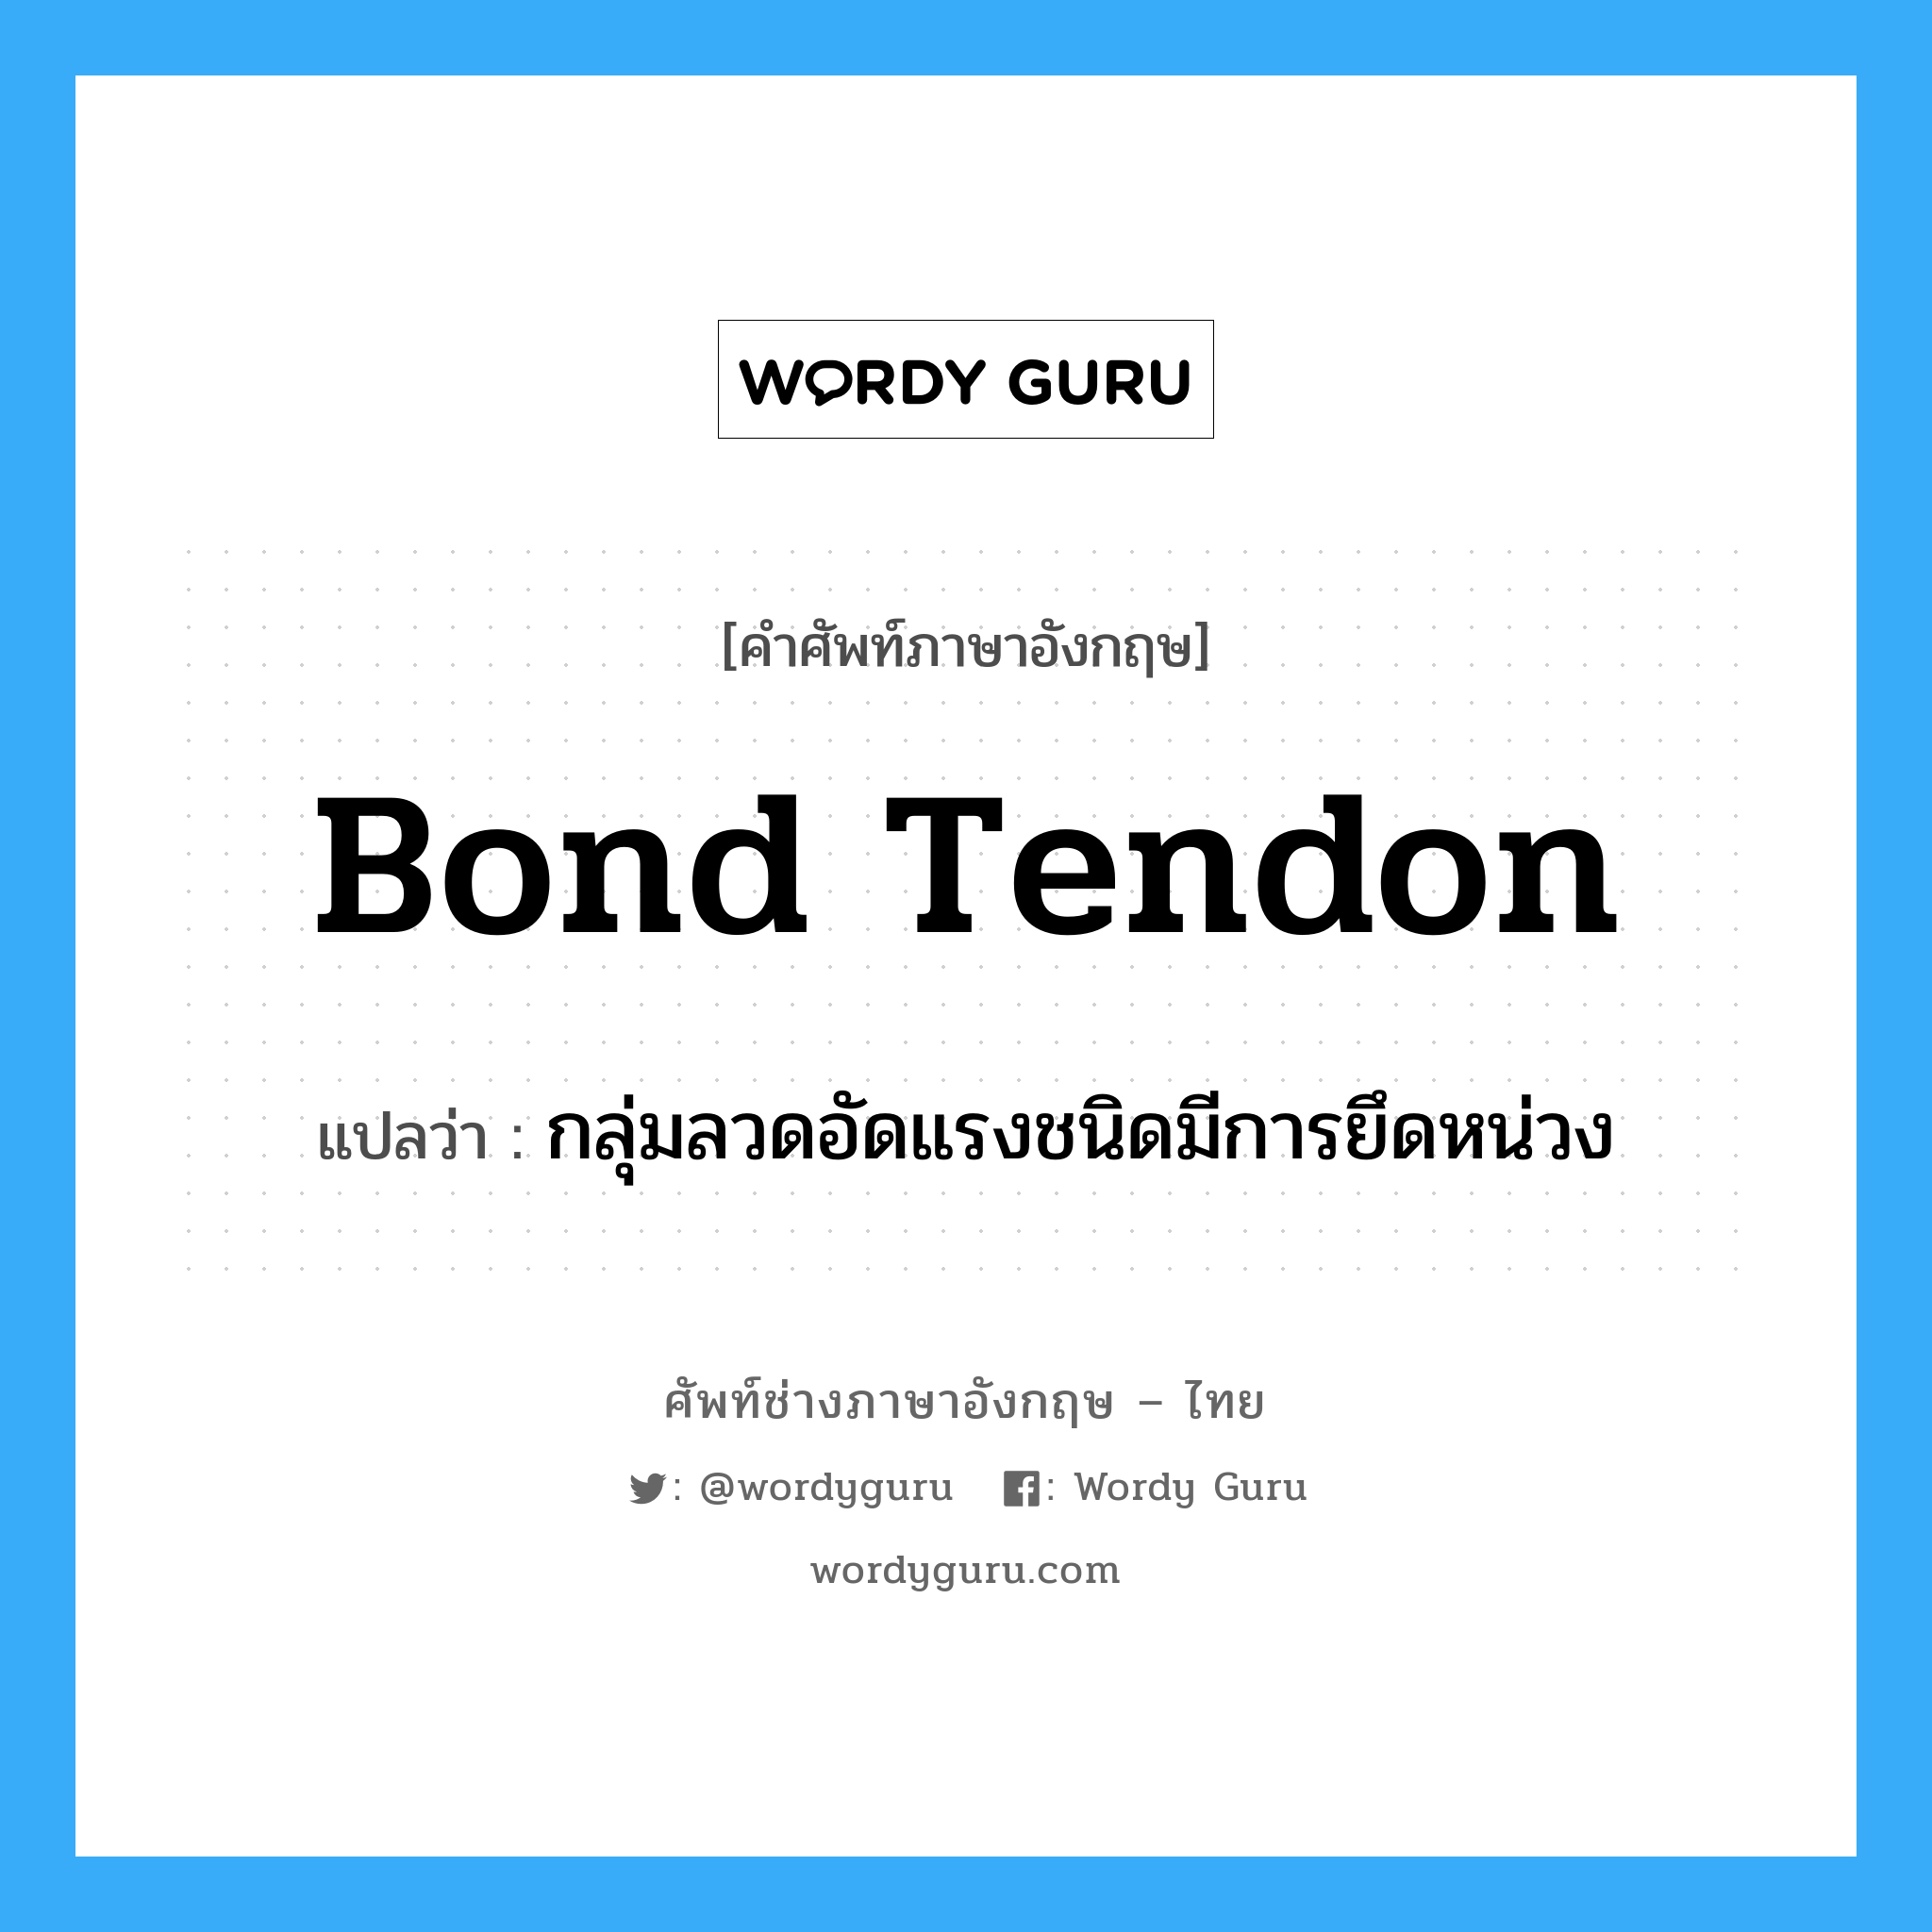 bond tendon แปลว่า?, คำศัพท์ช่างภาษาอังกฤษ - ไทย bond tendon คำศัพท์ภาษาอังกฤษ bond tendon แปลว่า กลุ่มลวดอัดแรงชนิดมีการยึดหน่วง